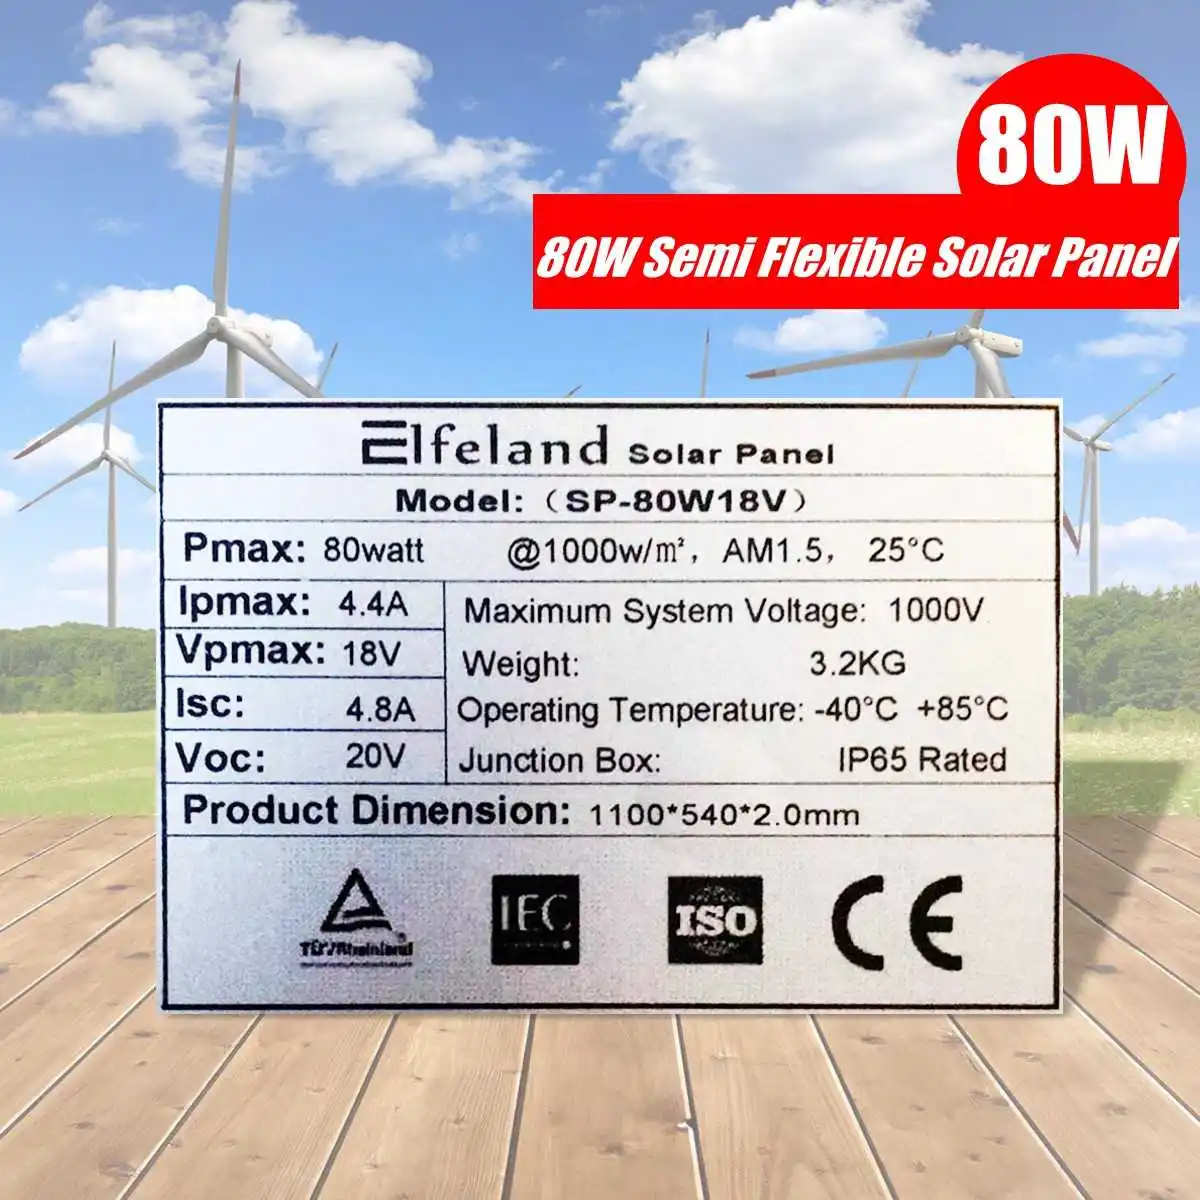 Kinco солнечная панель 80 Вт 12 В ETFT высокая эффективность effficiency Гибкая монокристаллическая солнечная панель